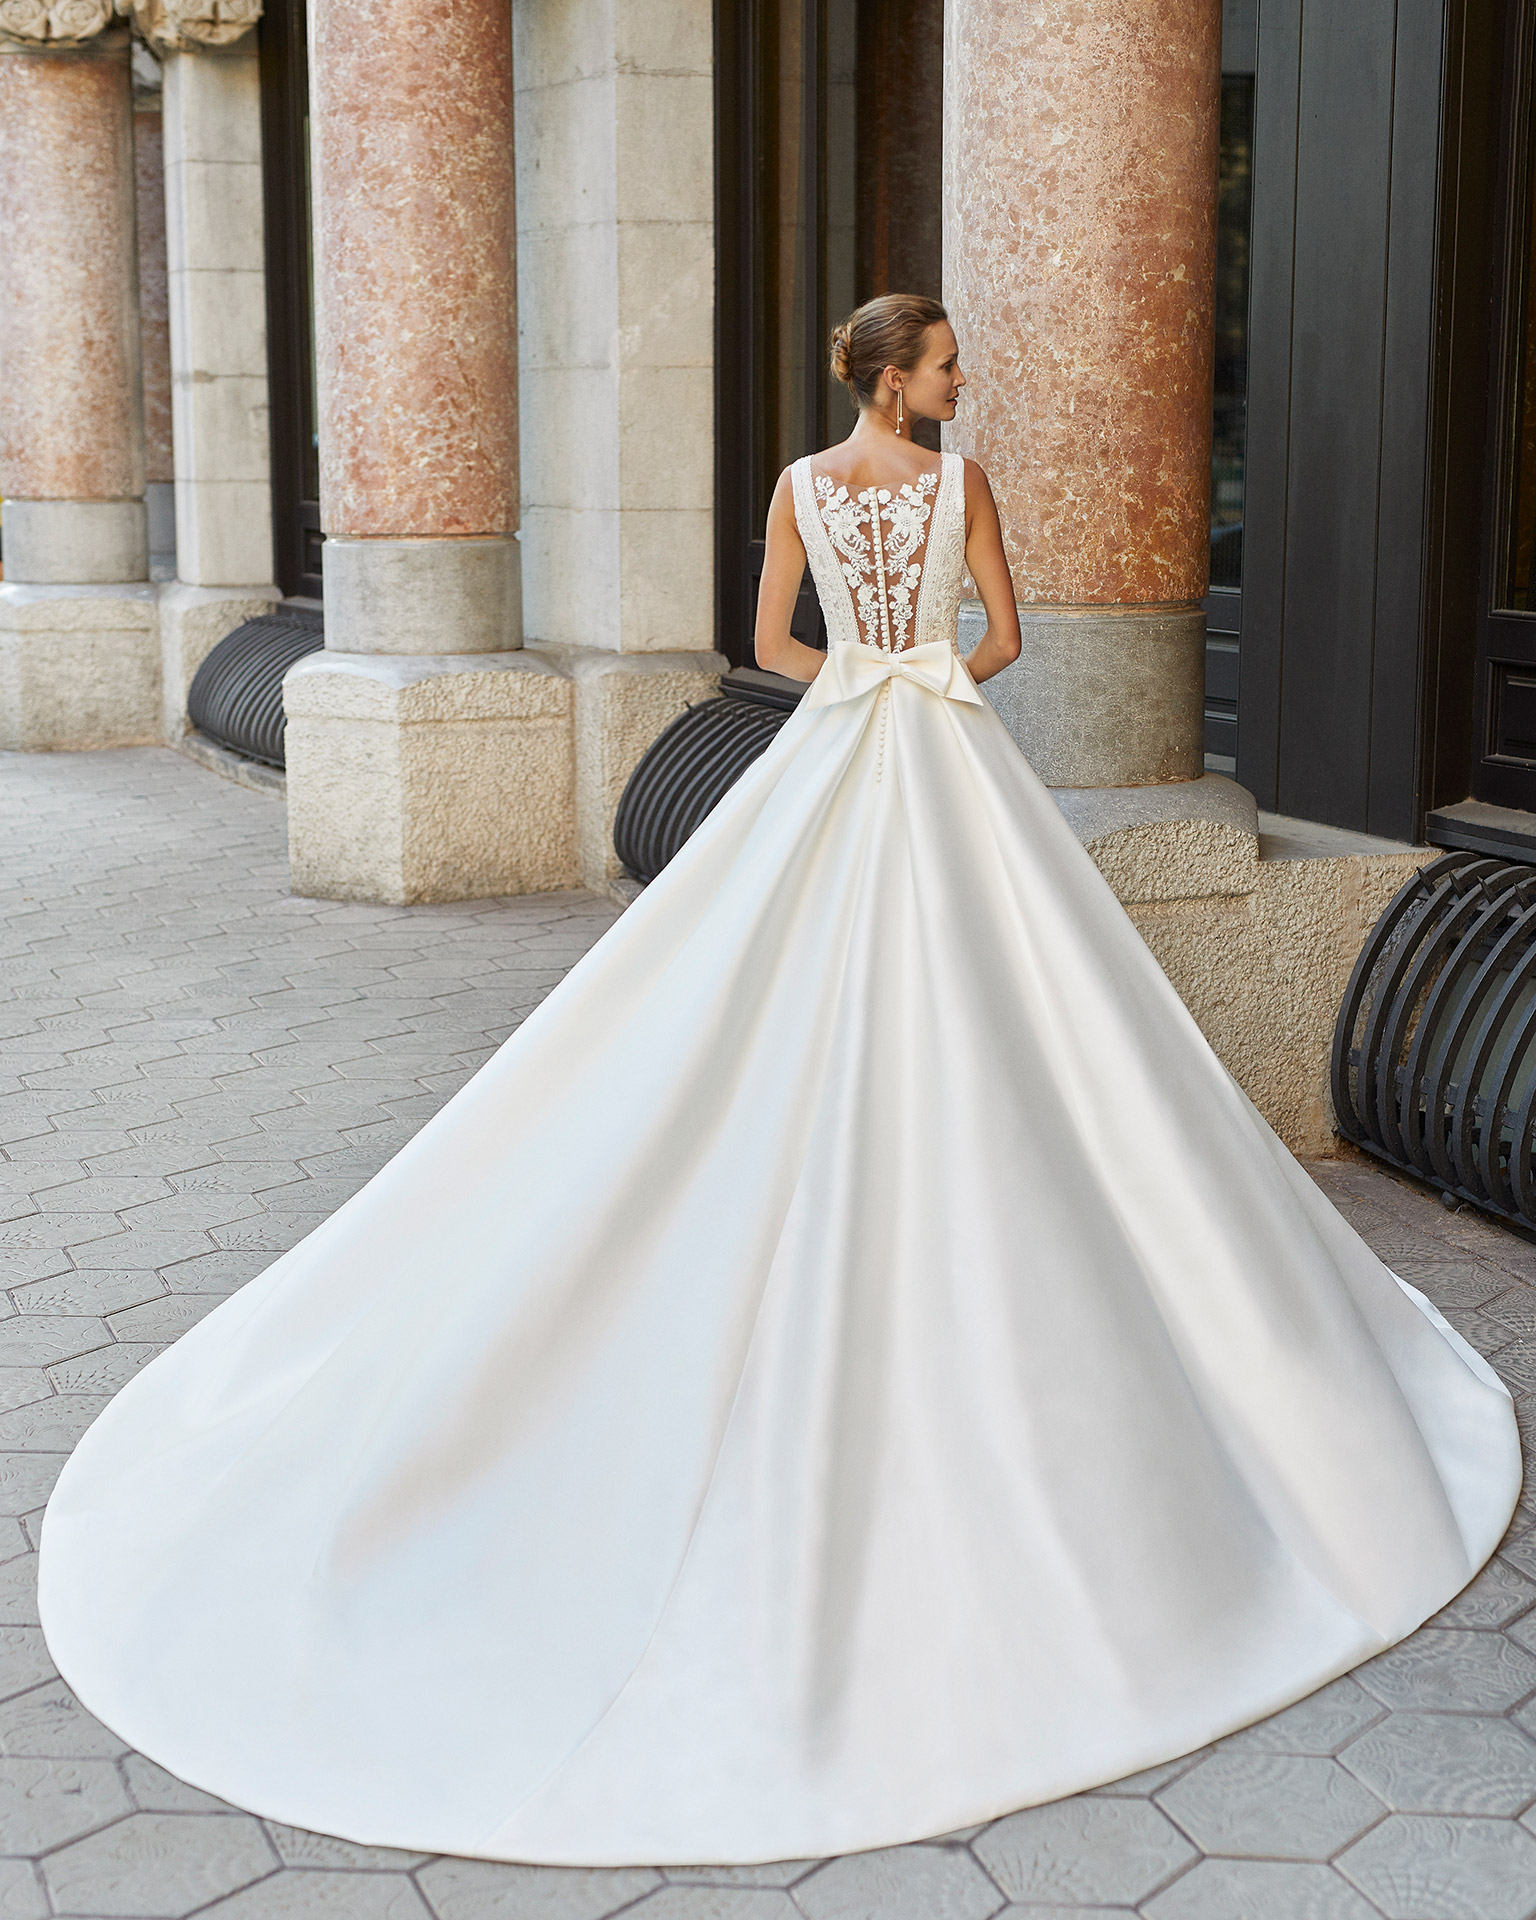 Vestido de novia de estilo clásico, raso, encaje y pedrería. Escote deep plunge y espalda con encaje aplicado. Colección  2022.